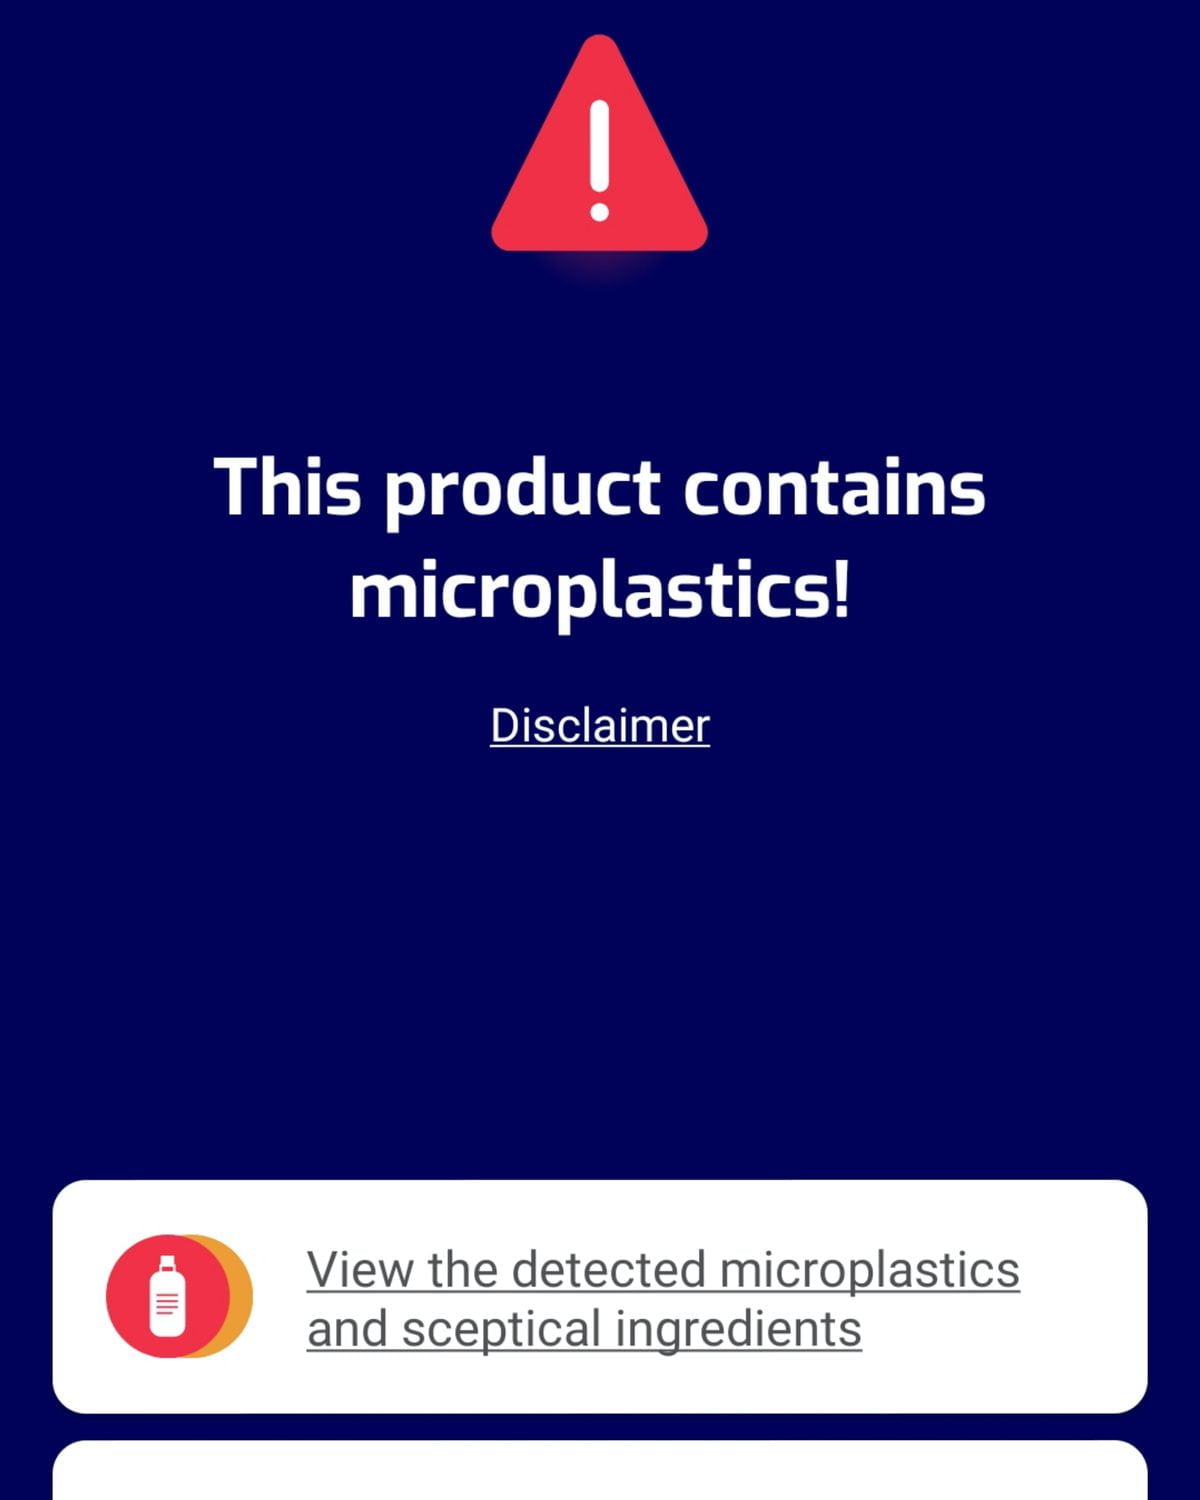 Met de Beat the Microbead app kun je checken of er microplastics in mijn verzorgingsproducten zitten. 